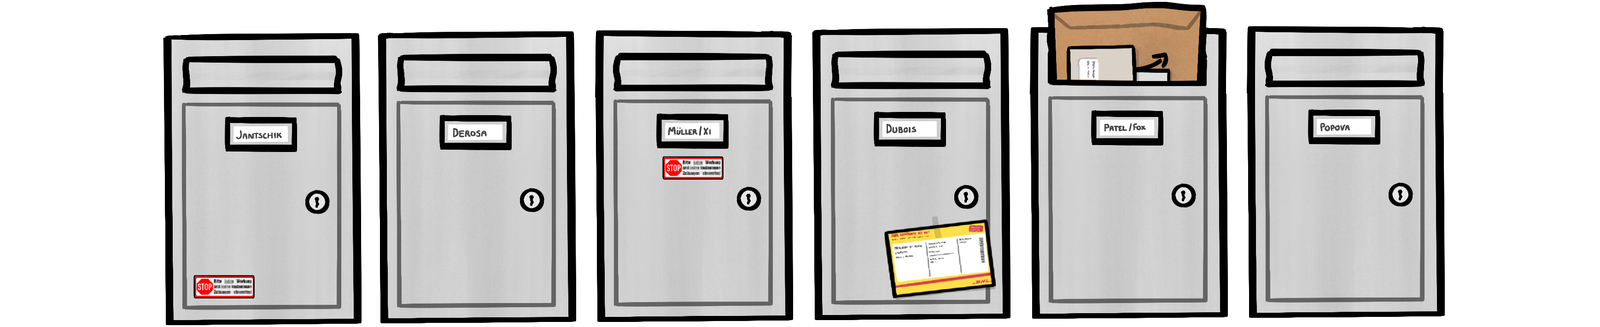 Illustration of German mailboxes (Briefkasten)